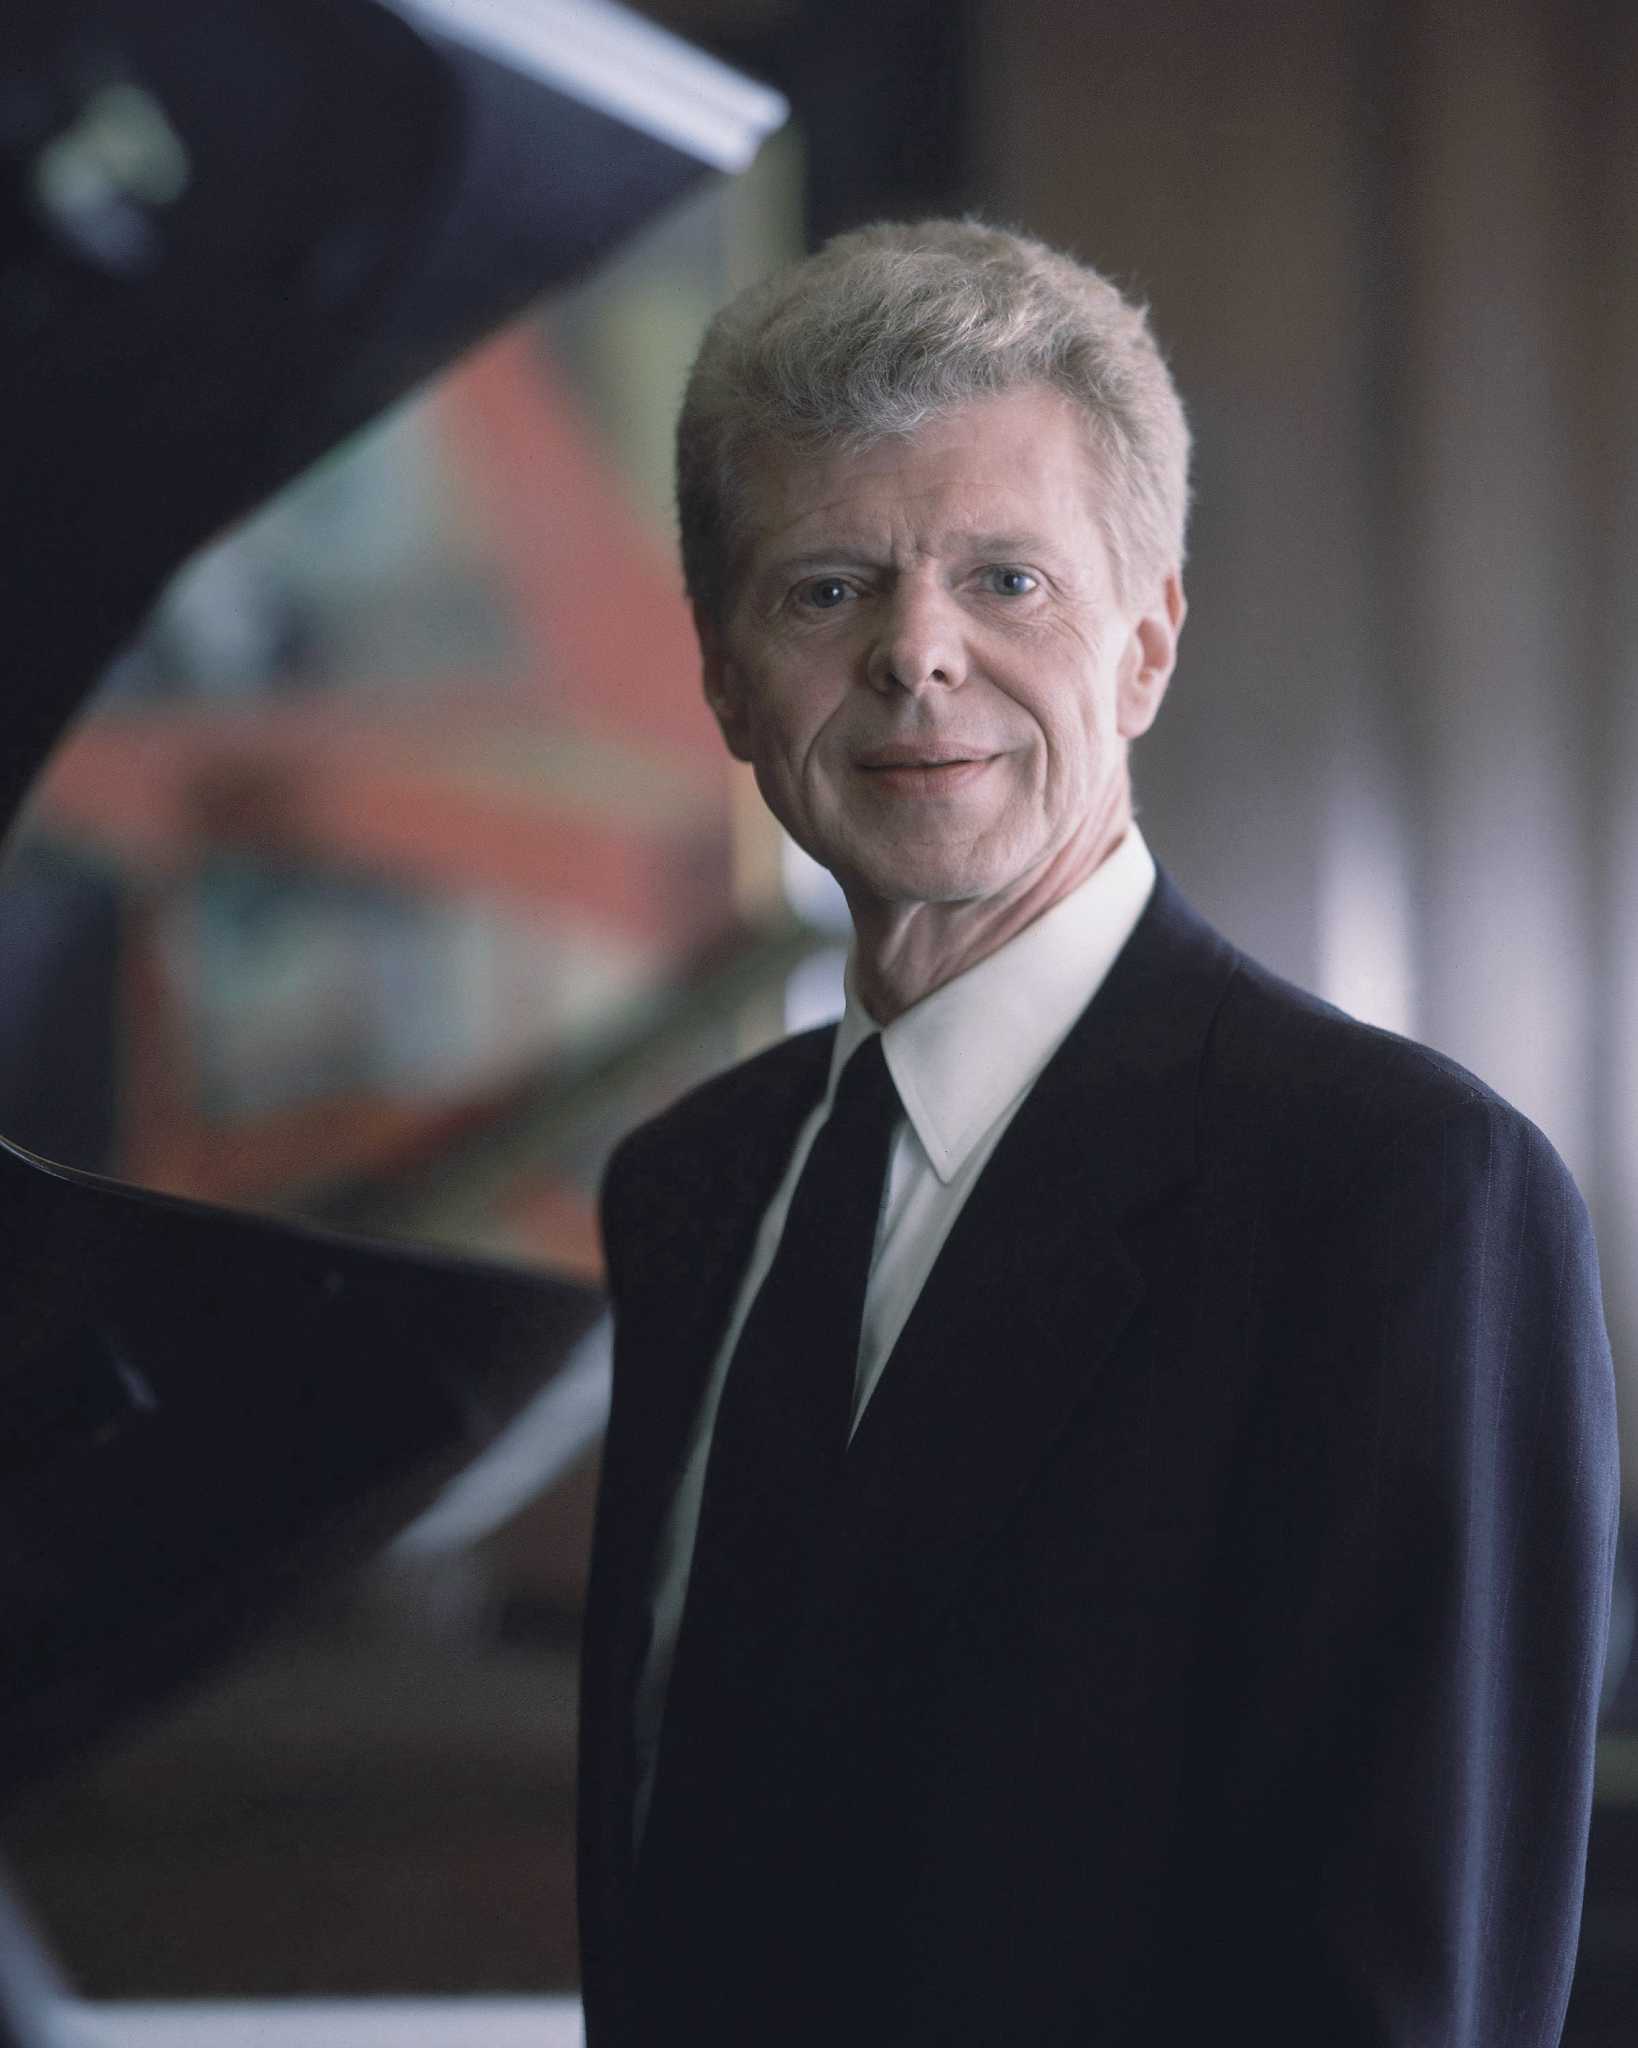 Van Cliburn, American classical pianist, dies at 78